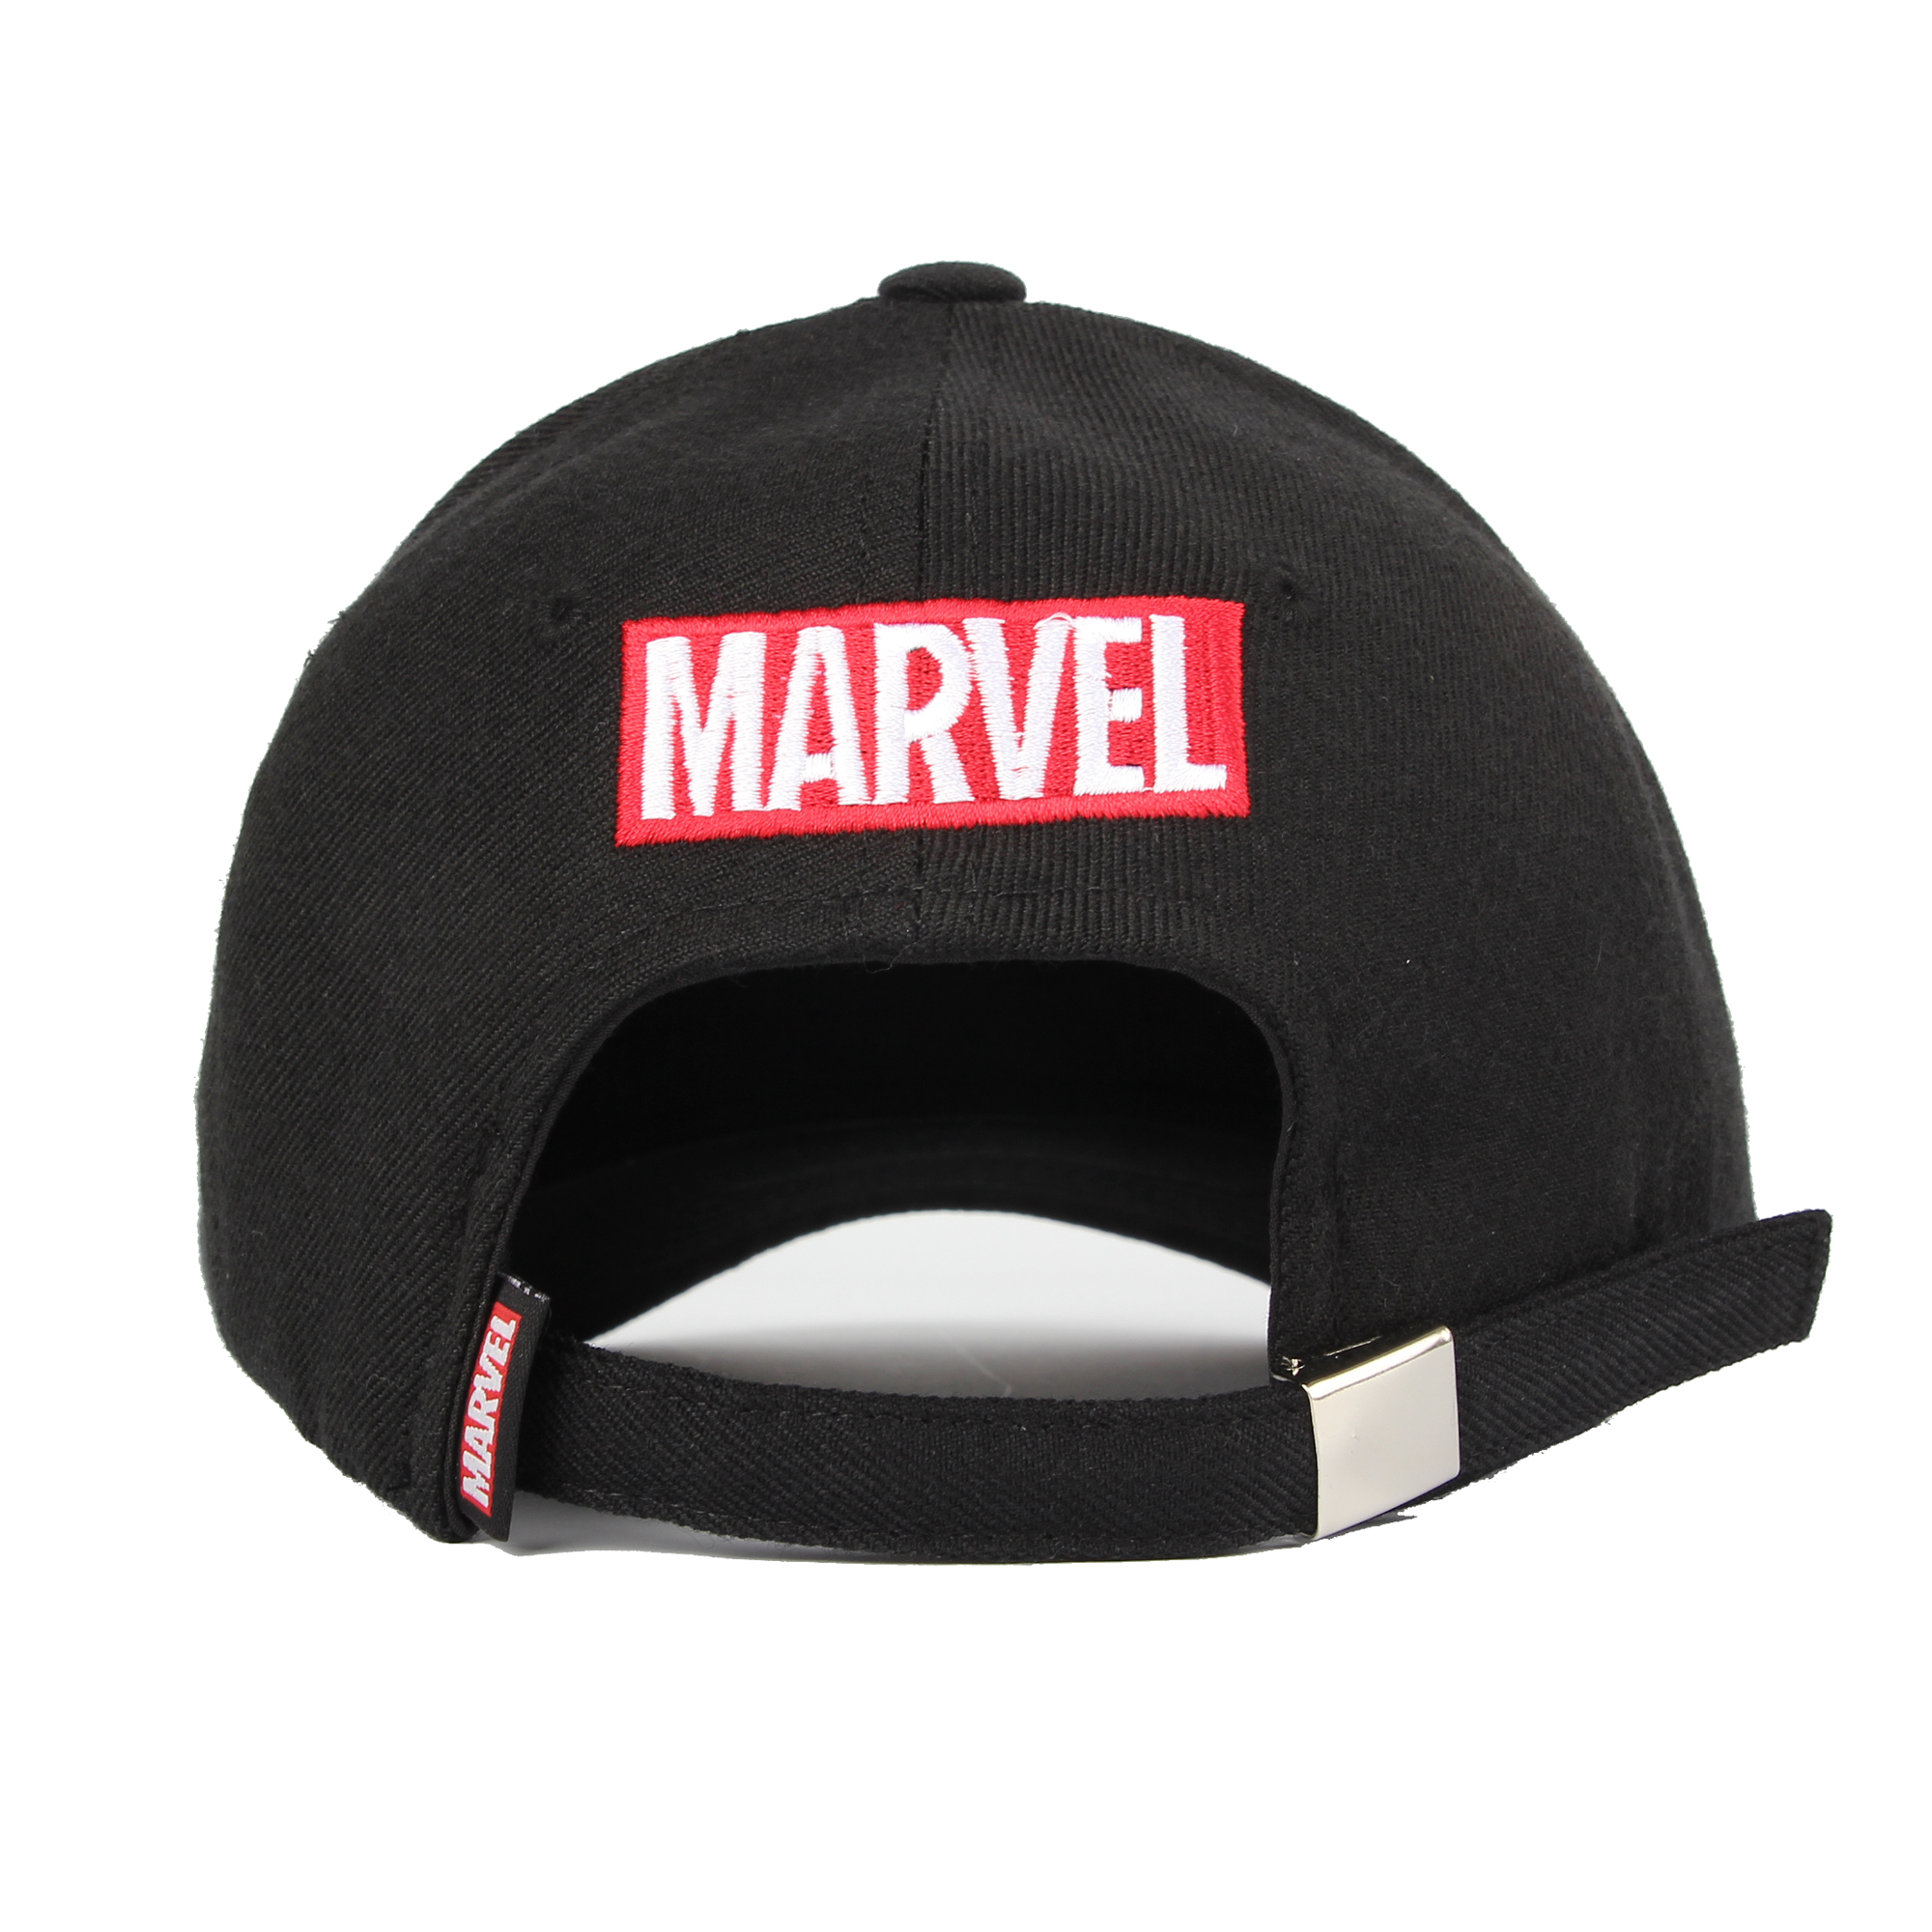 WITHMOONS Marvel Avengers Baseball Cap Spiderman Snapback Hat HL11071 ...